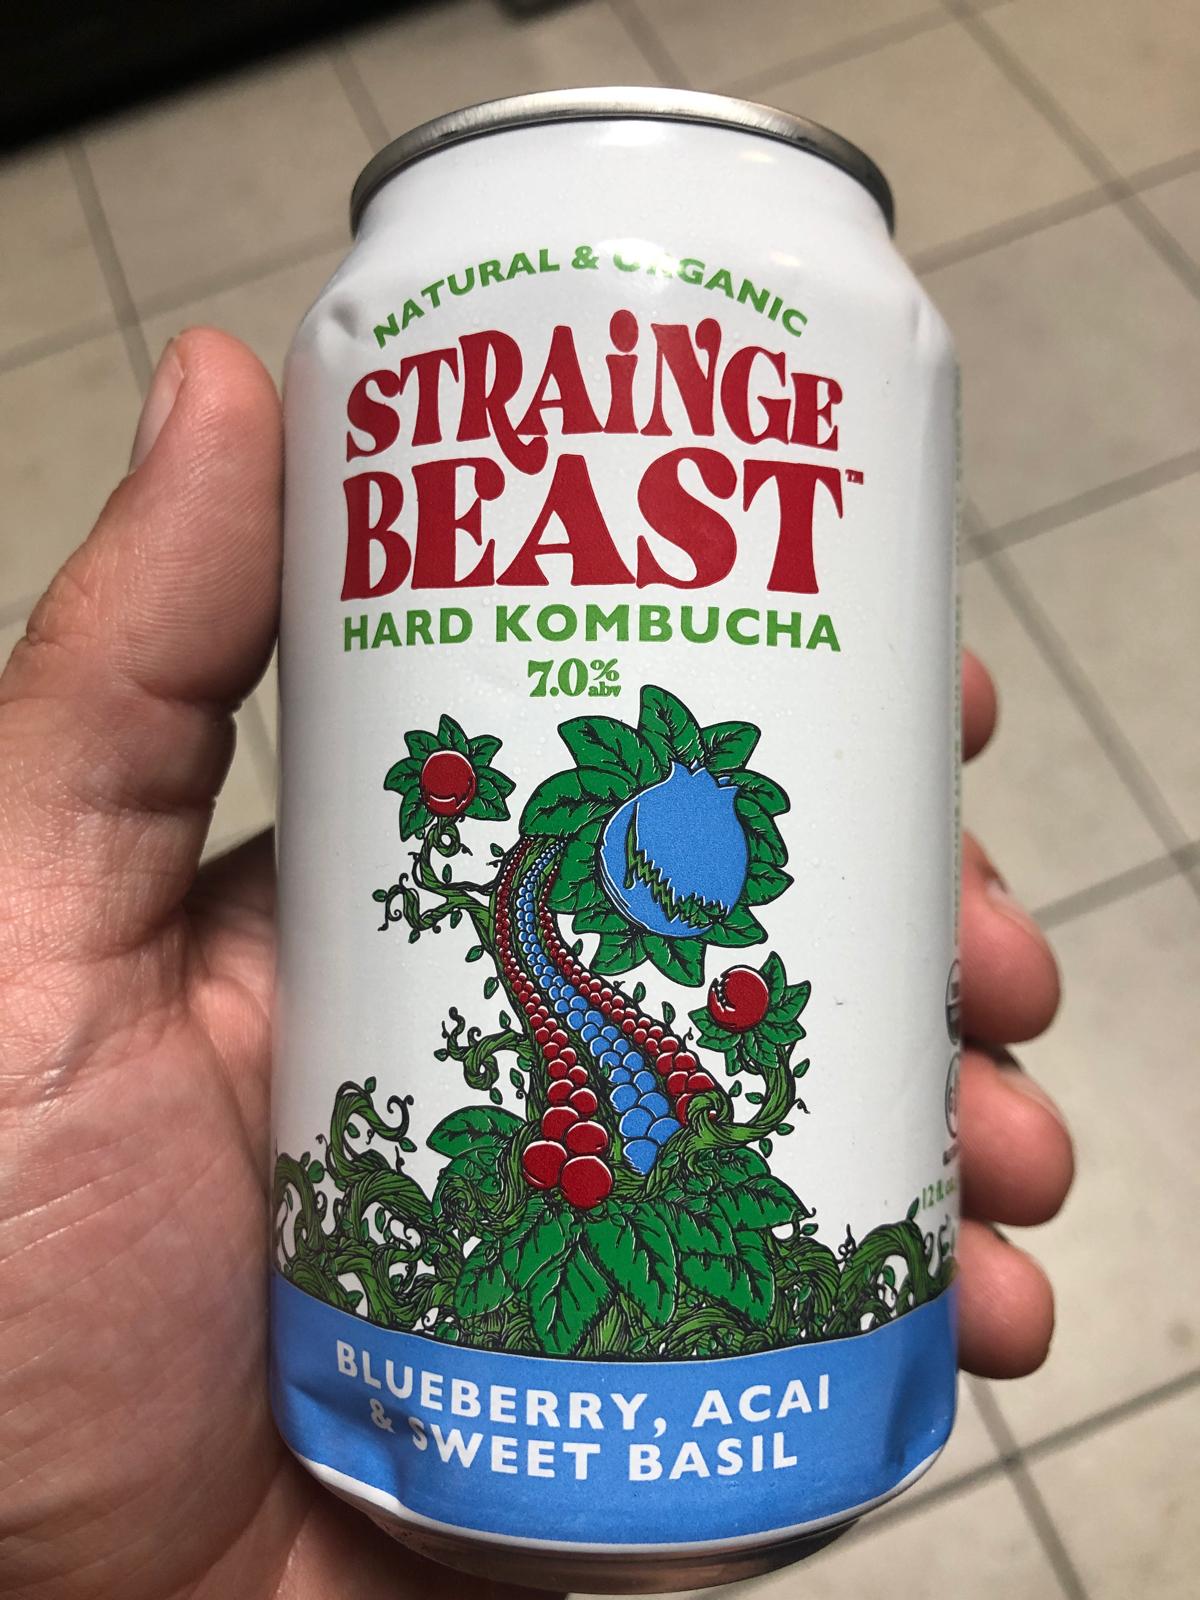 Strainge Beast - Hard Kombucha with Blueberry, Acai, and Sweet Basil 